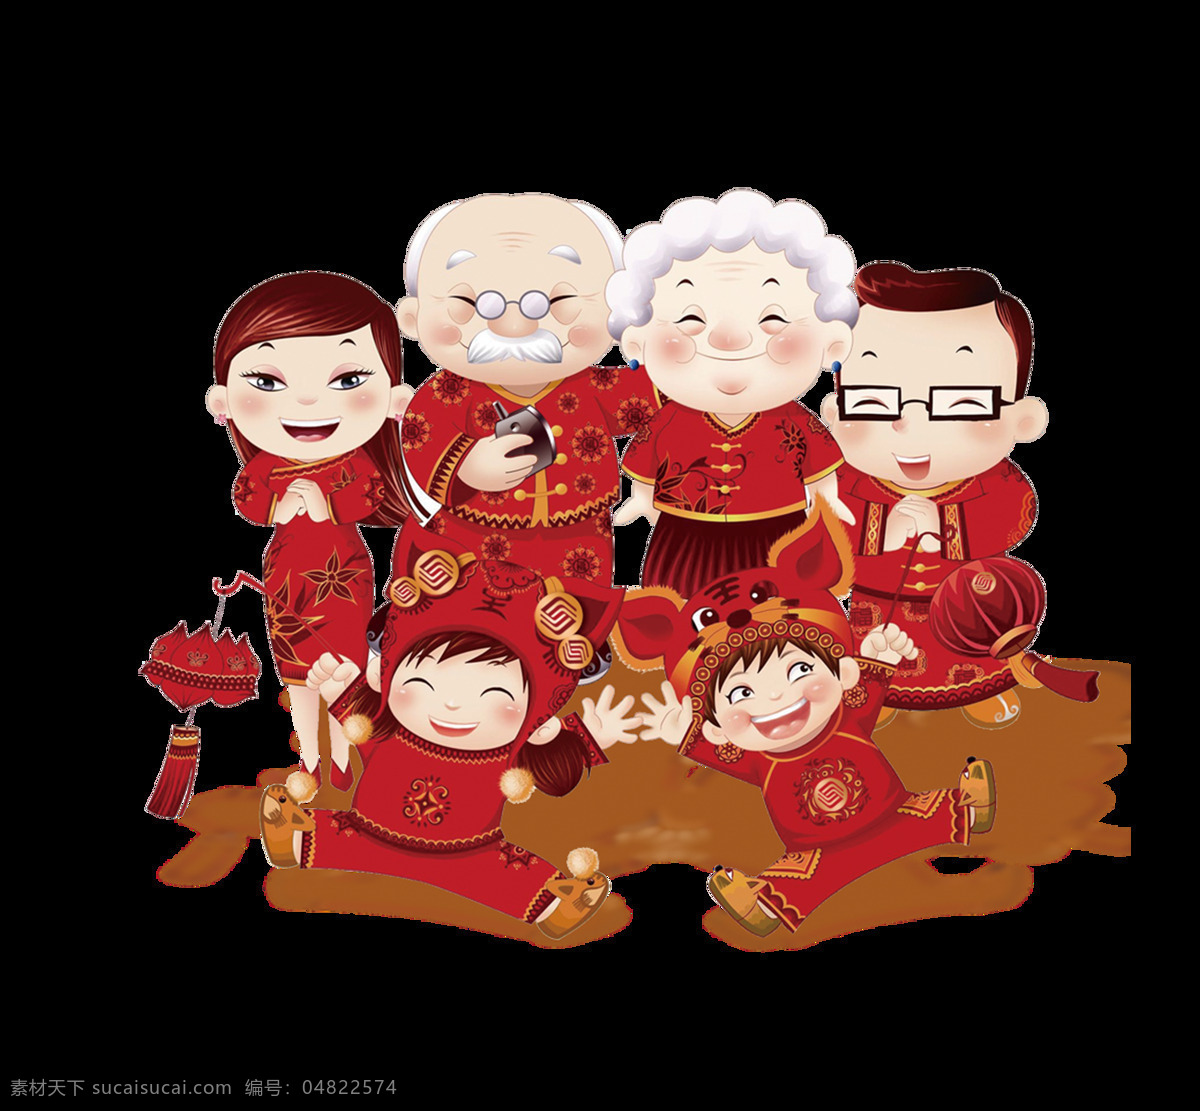 一家人 过年 红色 卡通 元素 ng元素 过年素材图片 免抠元素 童趣 透明元素 中国风